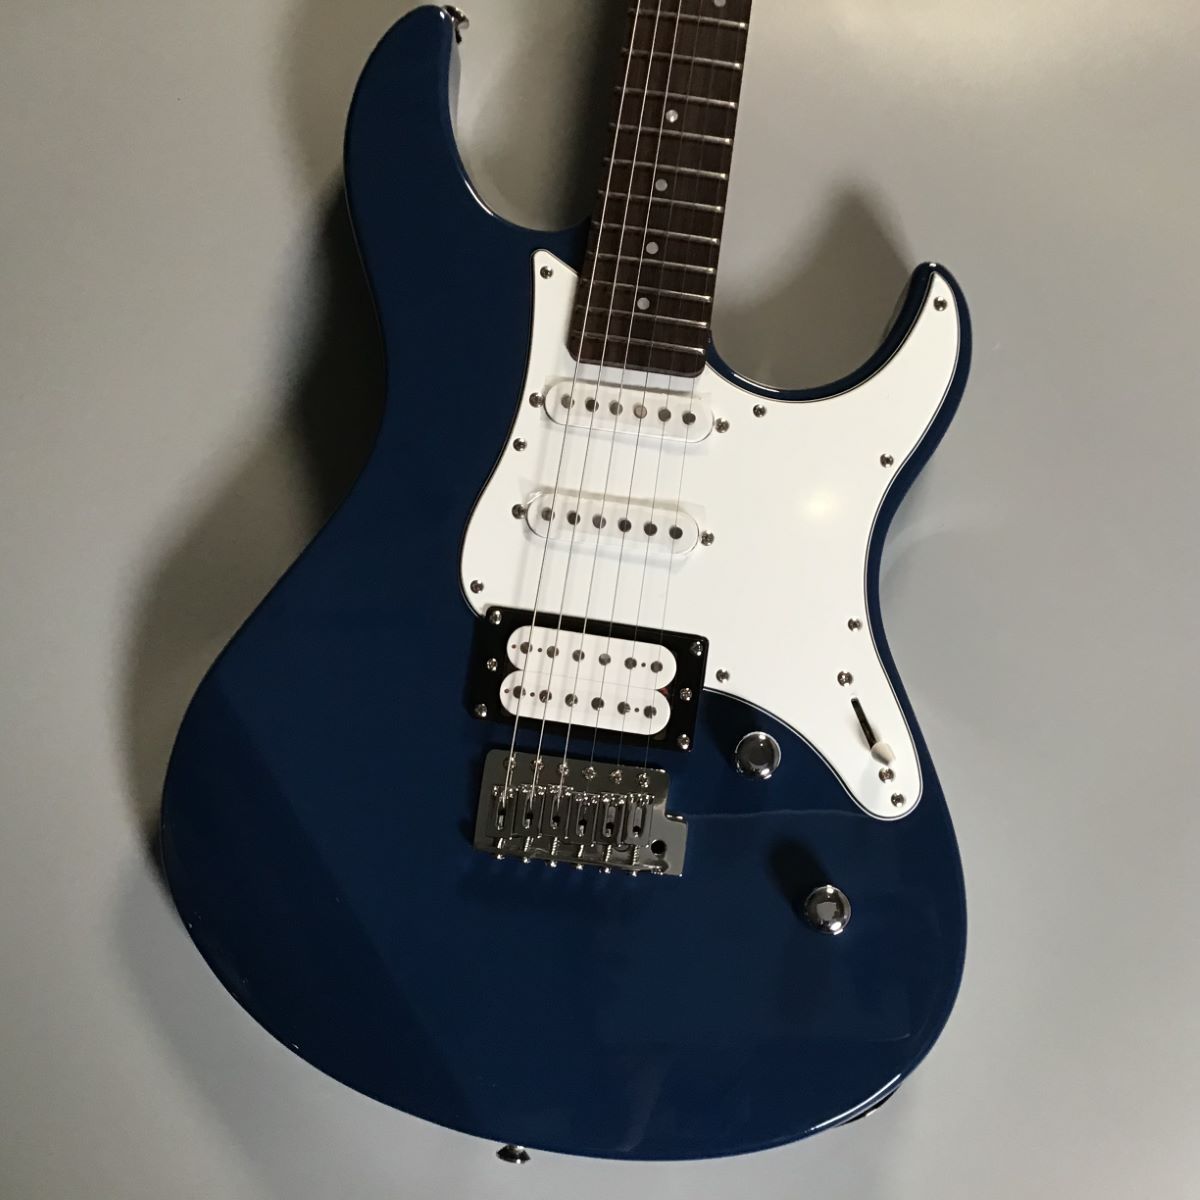 パシフィカ PAC112J ブルー ヤマハ - エレキギター